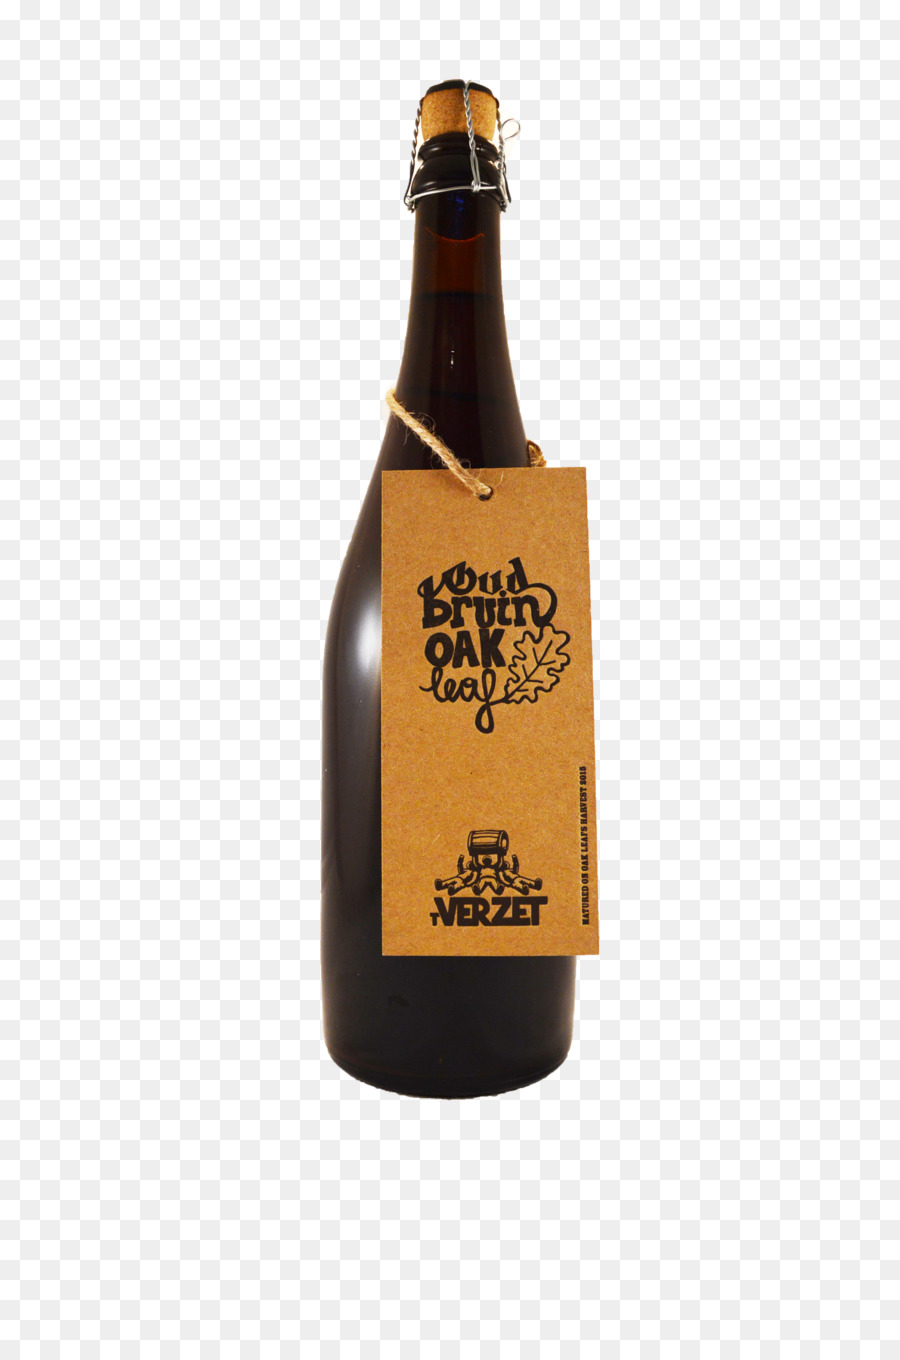 Saures Bier Oud bruin Bier Flasche Verloren Abtei - Bier